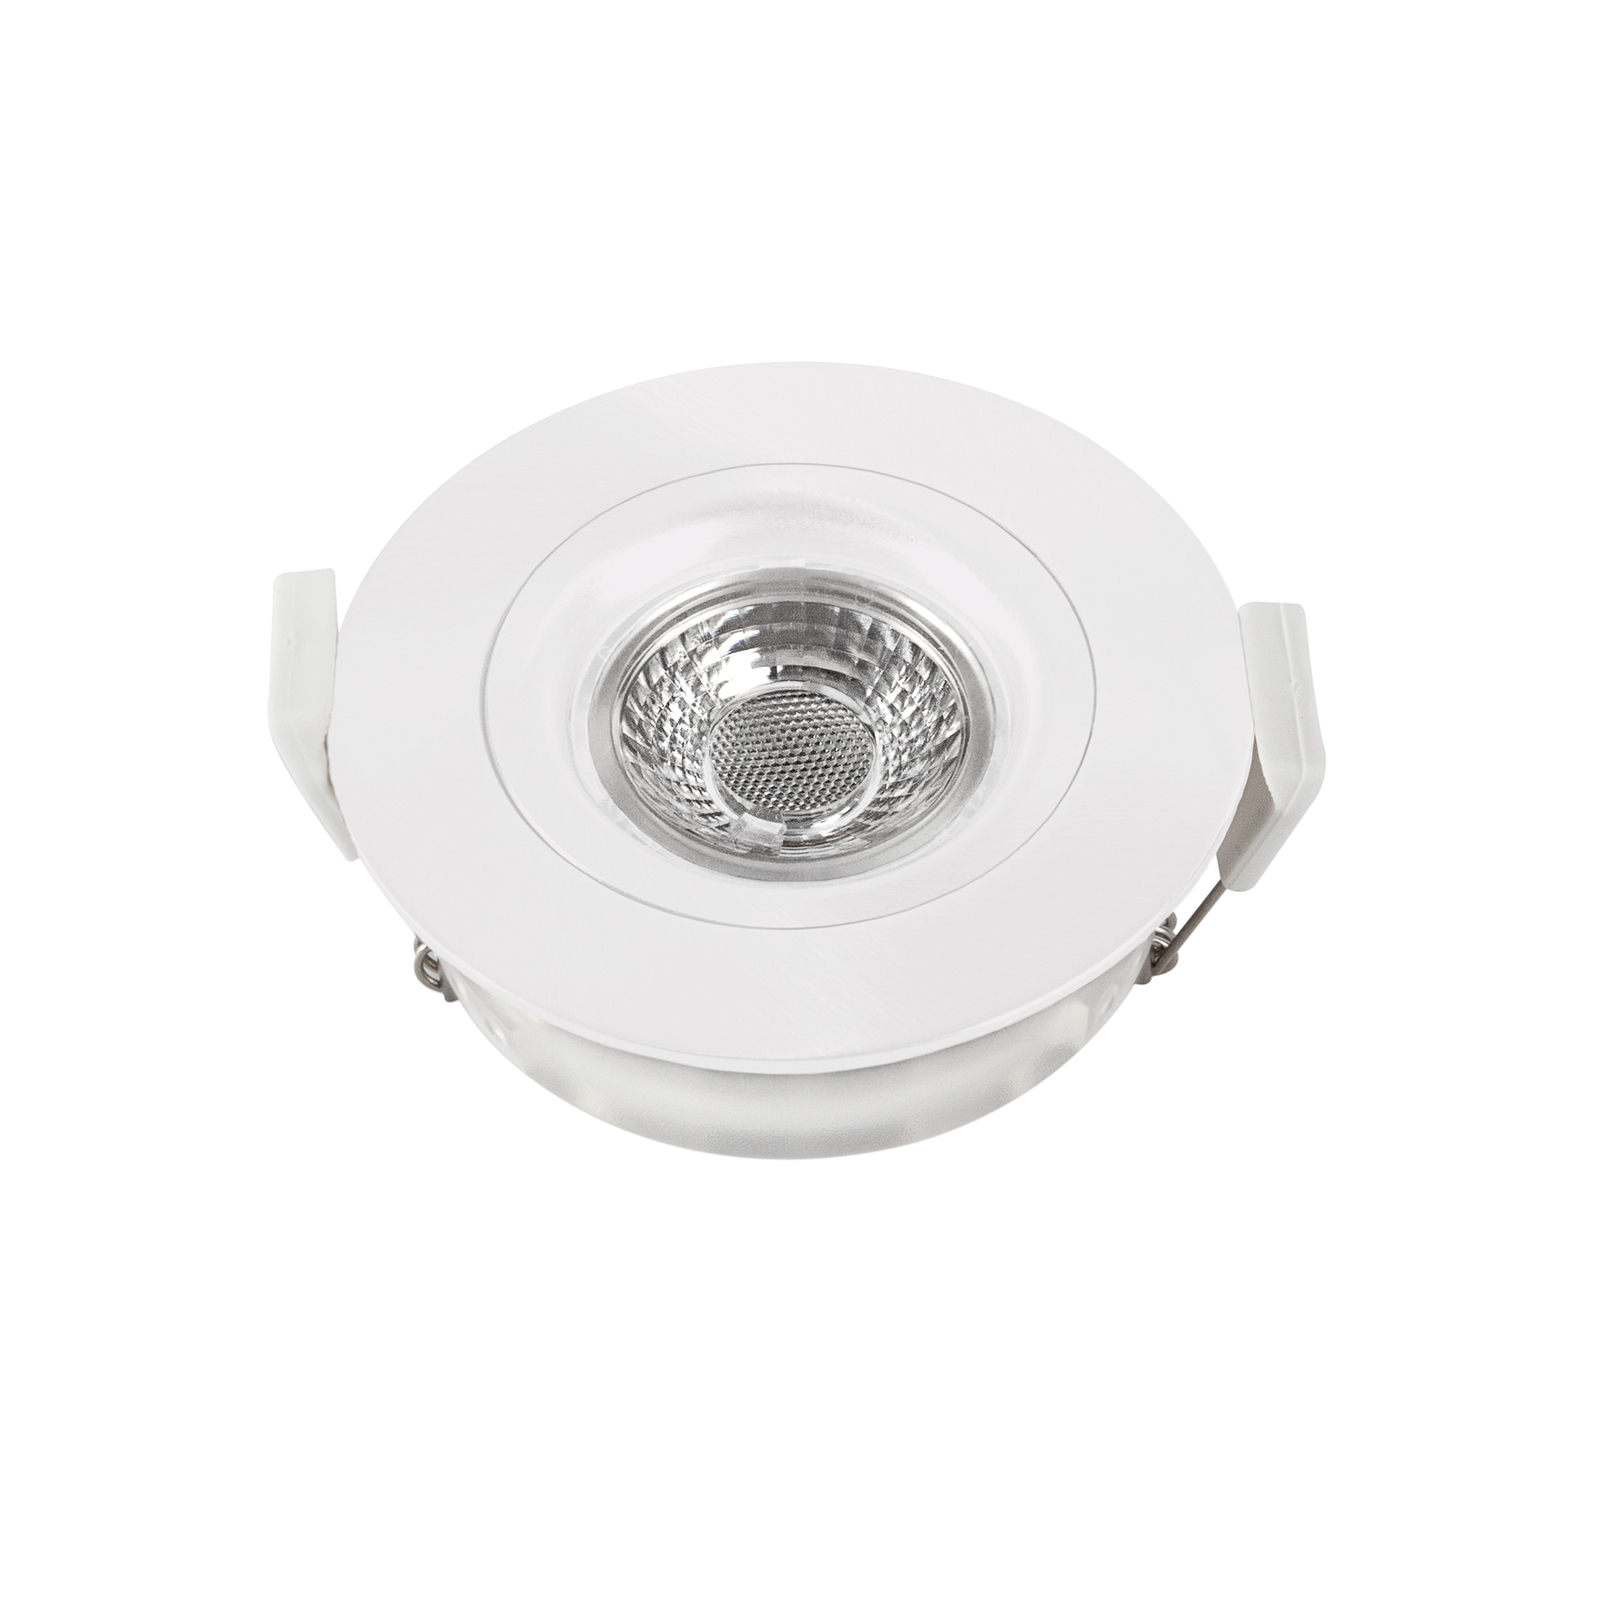 LED-Deckeneinbaustrahler DL6809, rund, weiß